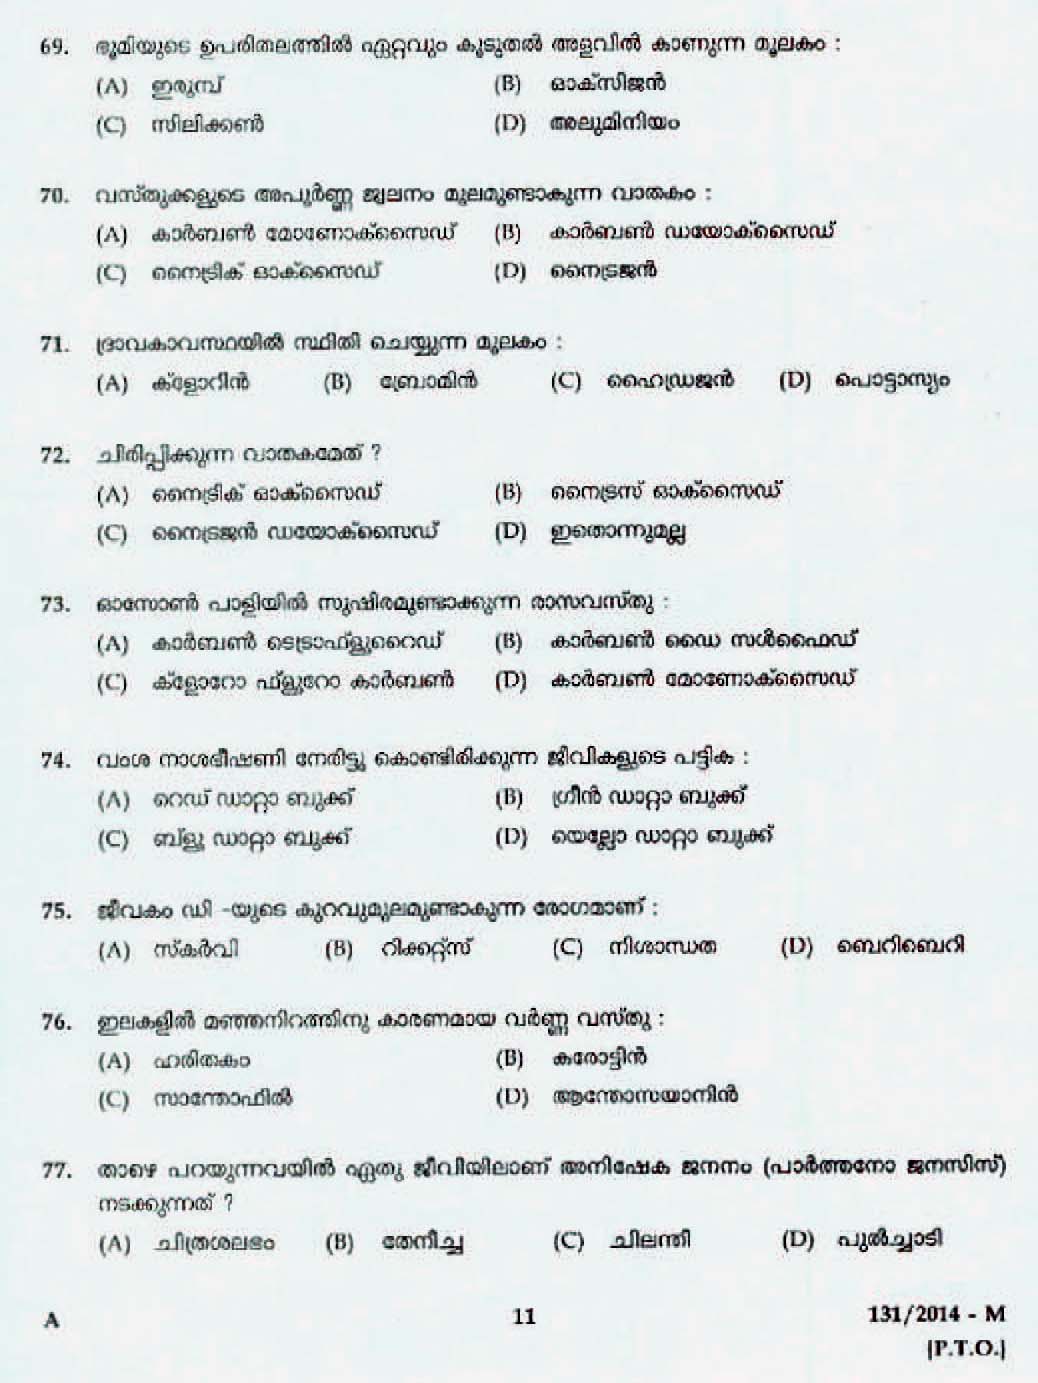 Kerala Last Grade Servants Exam 2014 Question Paper Code 1312014 M 9